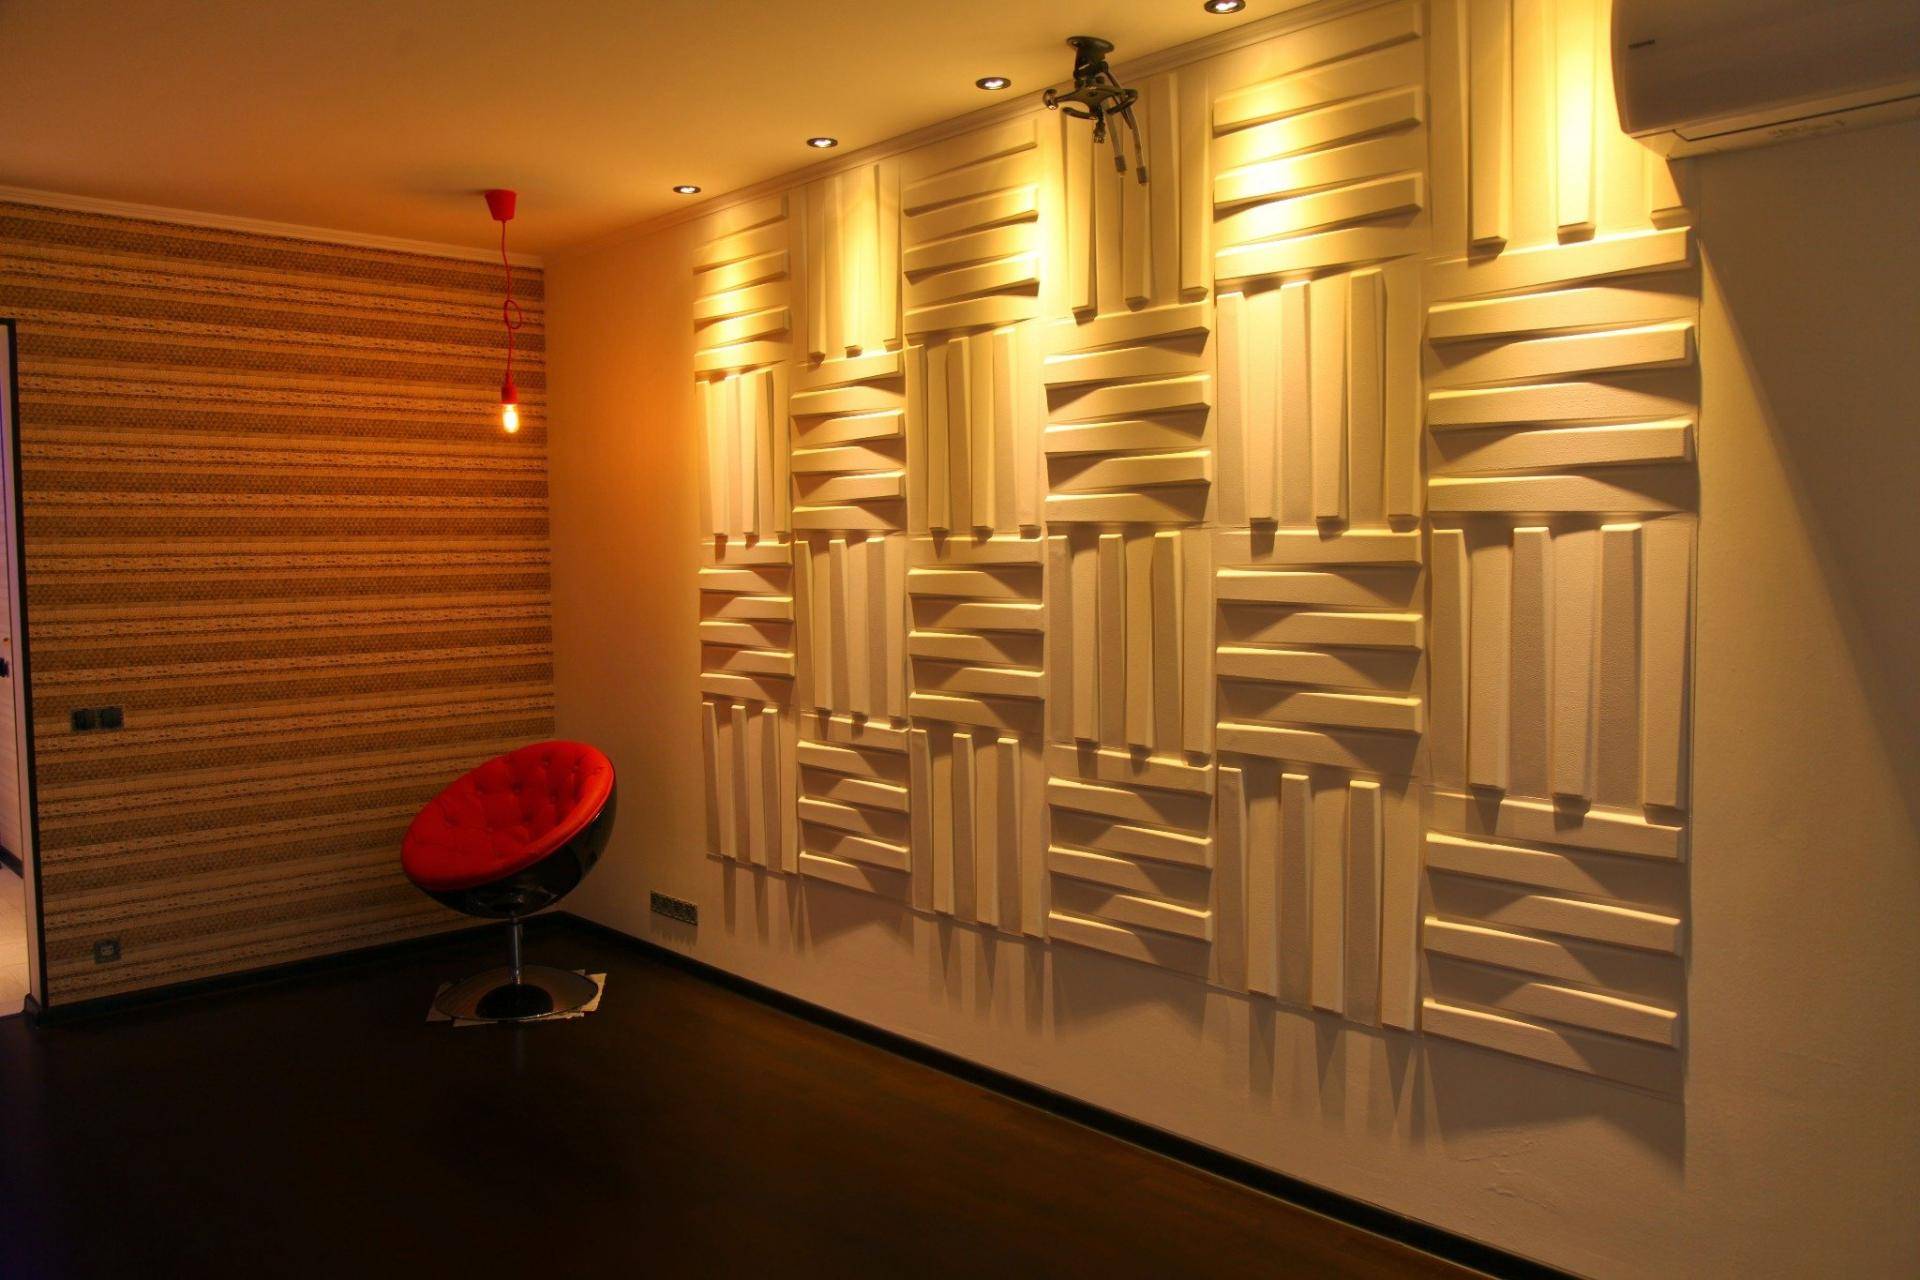 декоративные гипсовые панели для внутренней отделки стен в интерьере